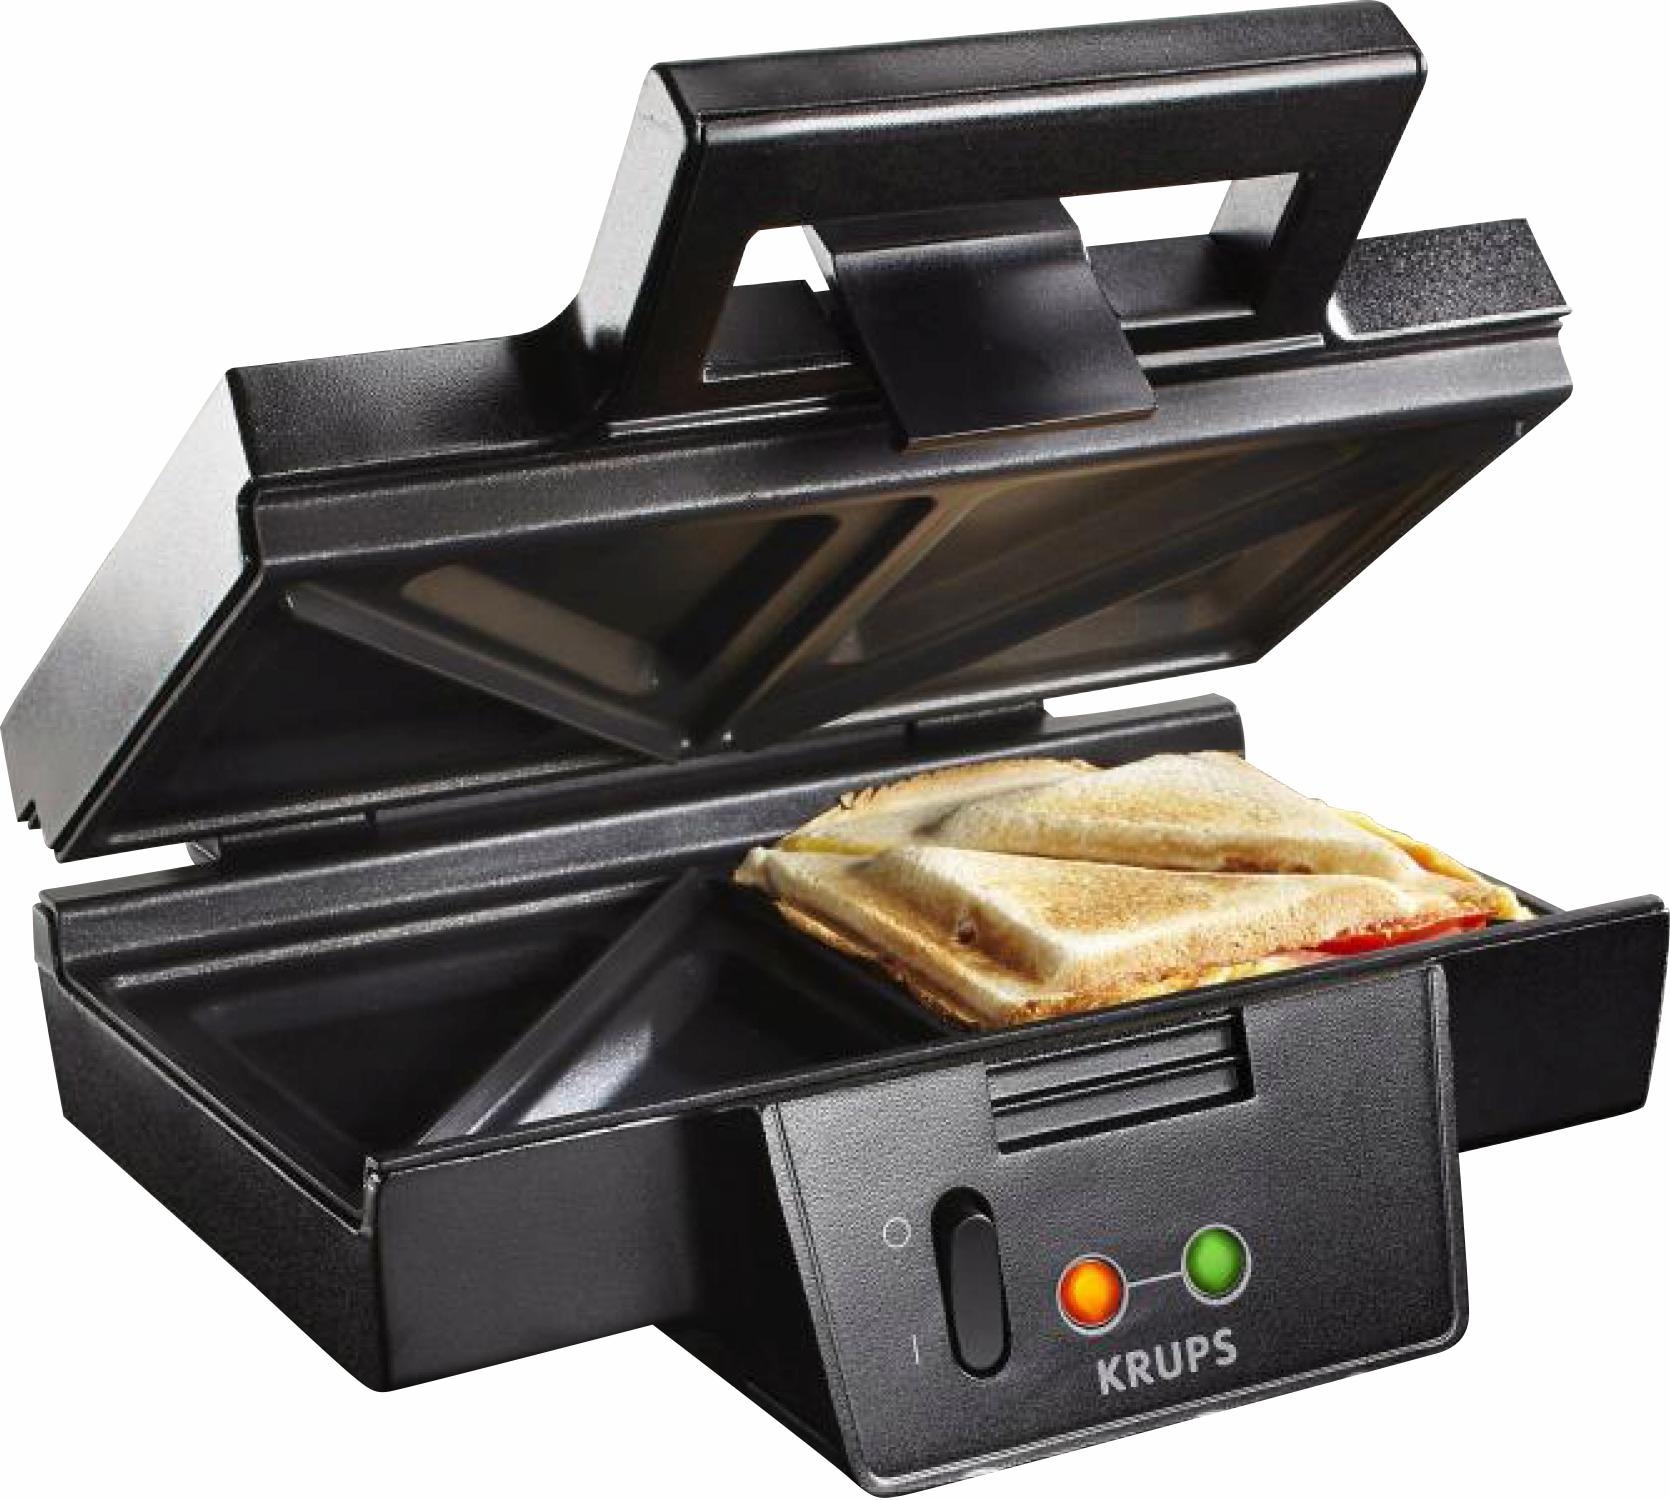 Krups Sandwichmaker FDK451, 850 Watt Rechnung kaufen auf